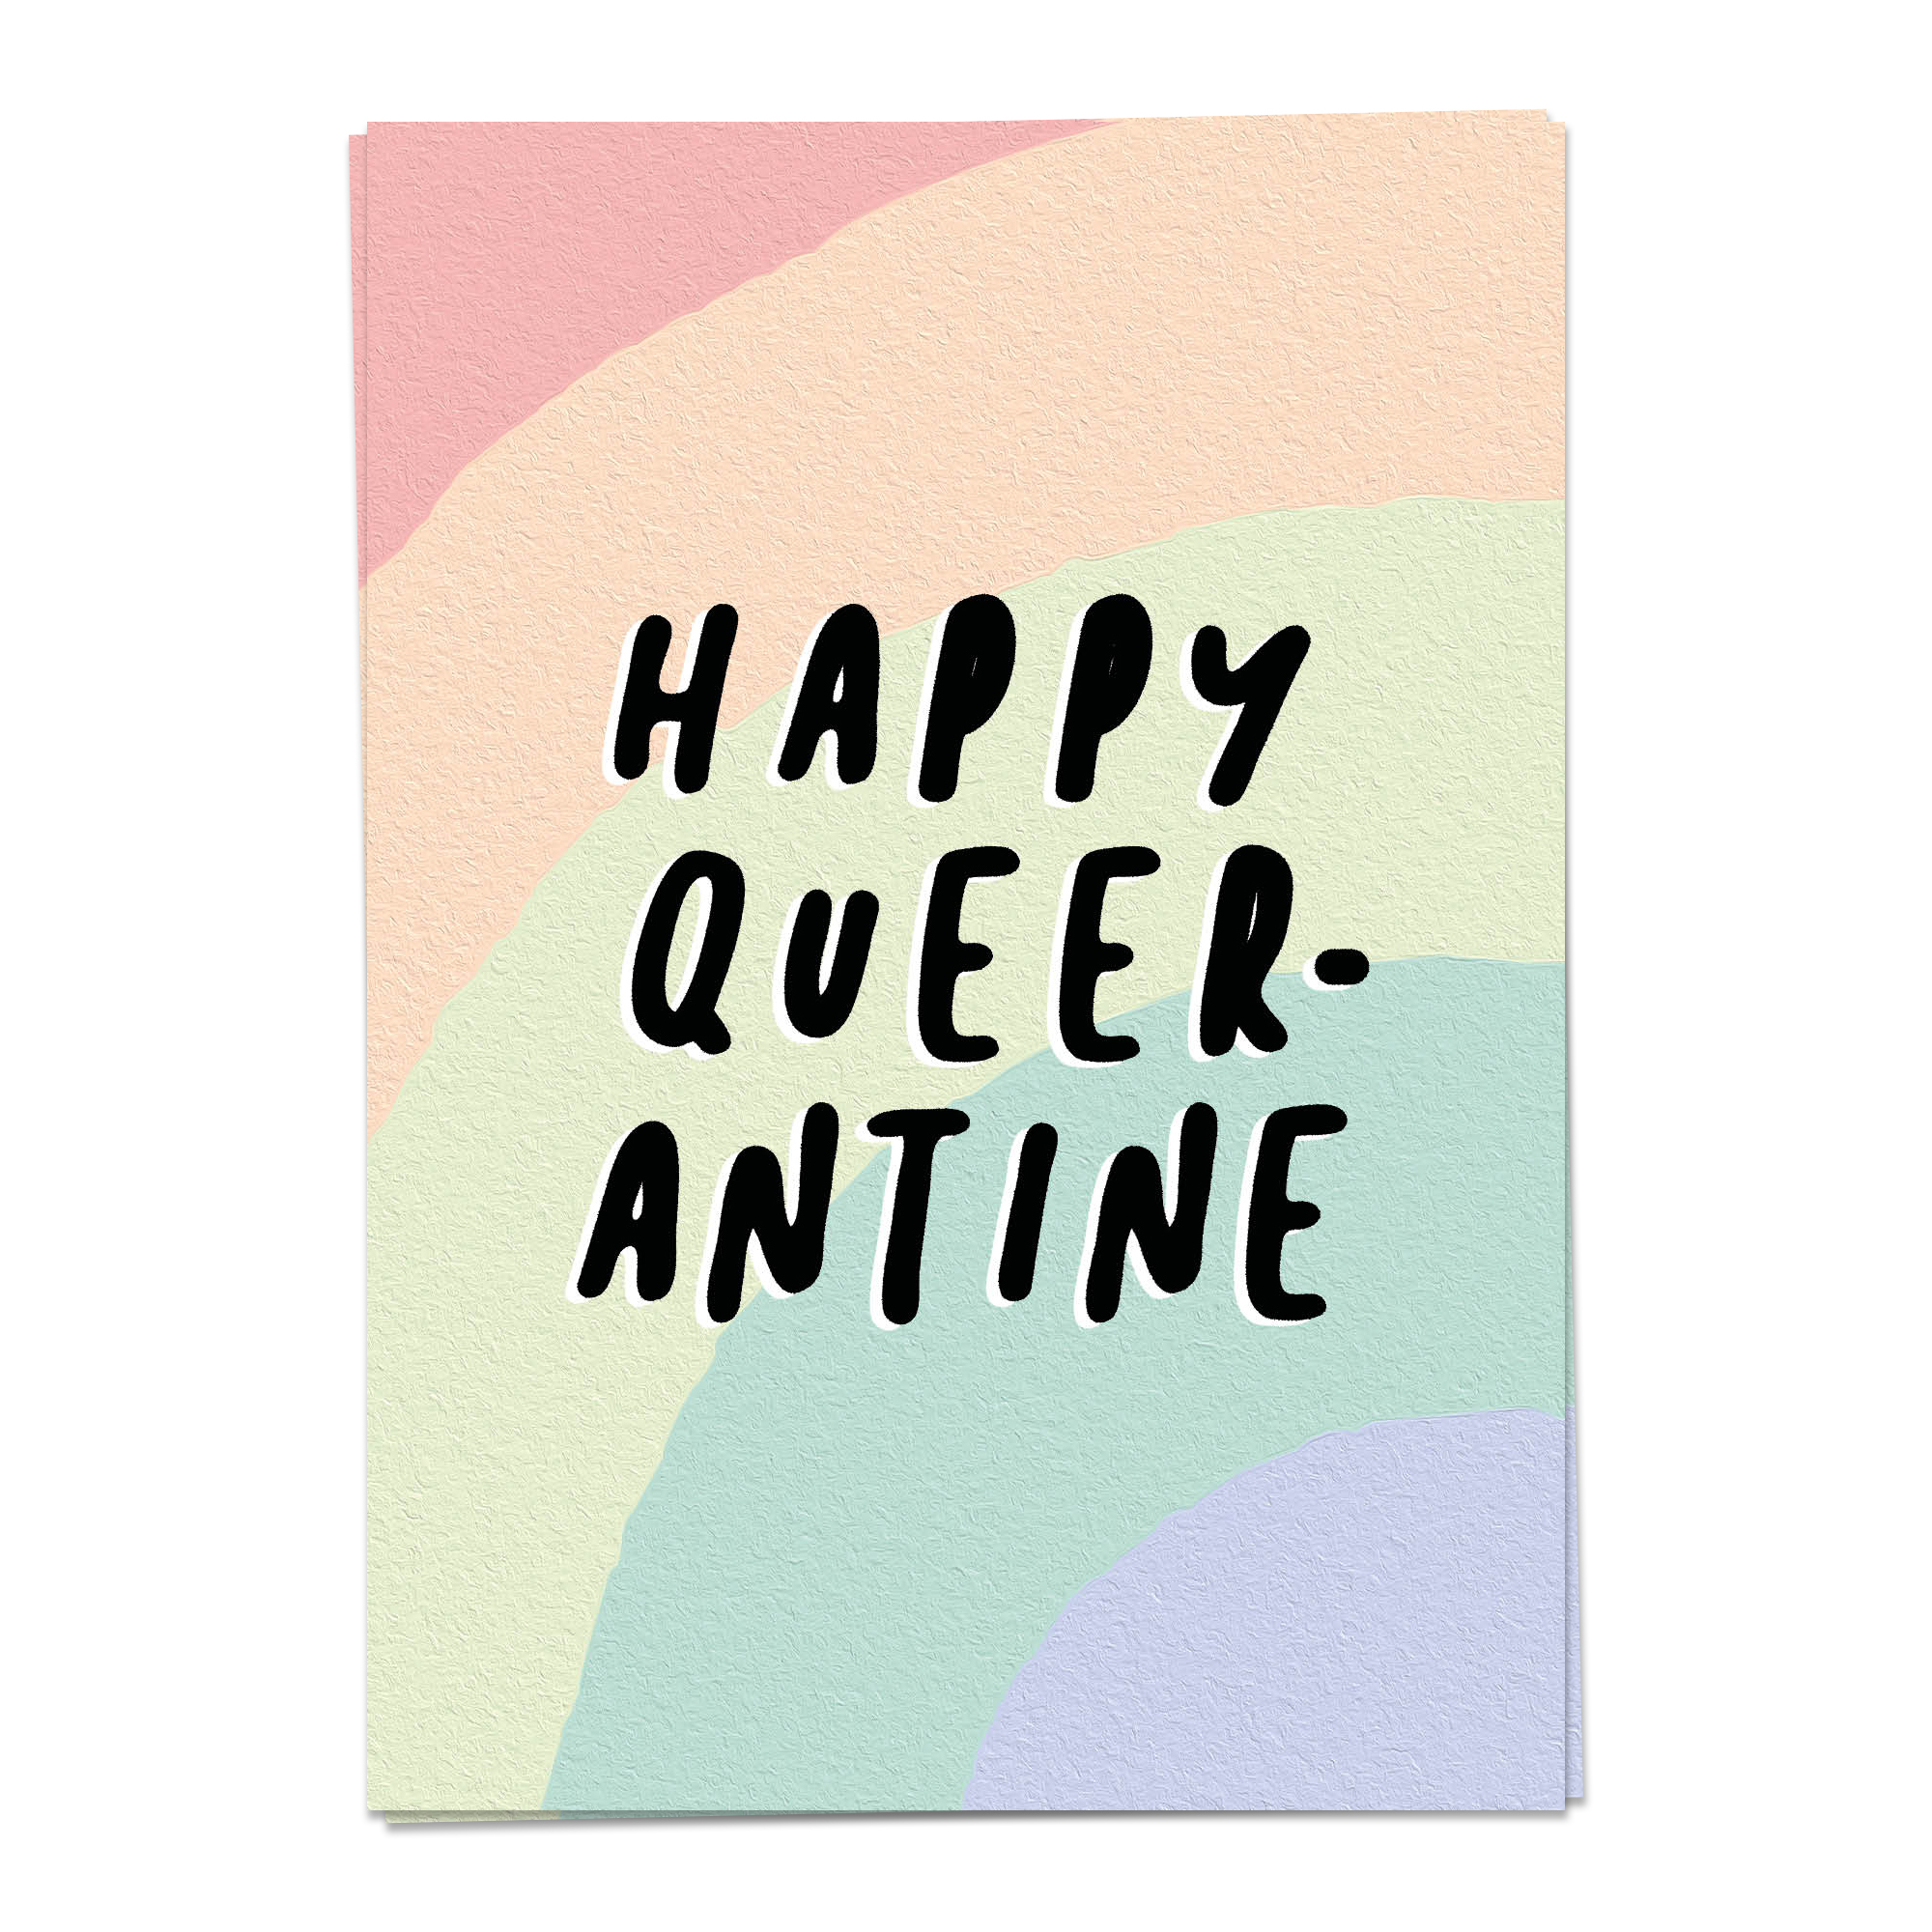 LGBTQ - Happy queerantine